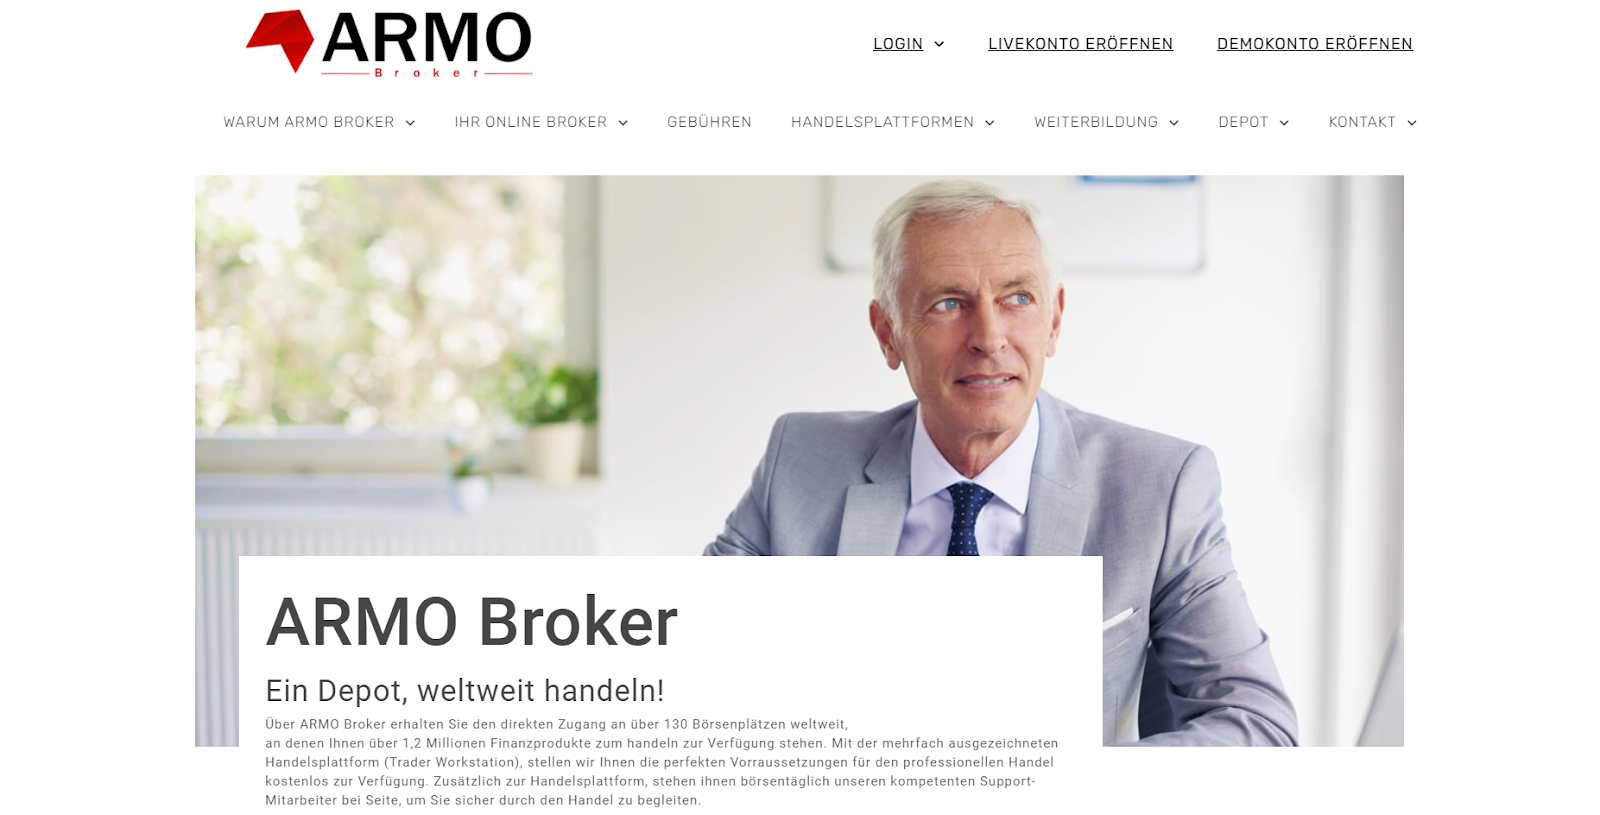 Обзор ARMO - Открытие торгового счета